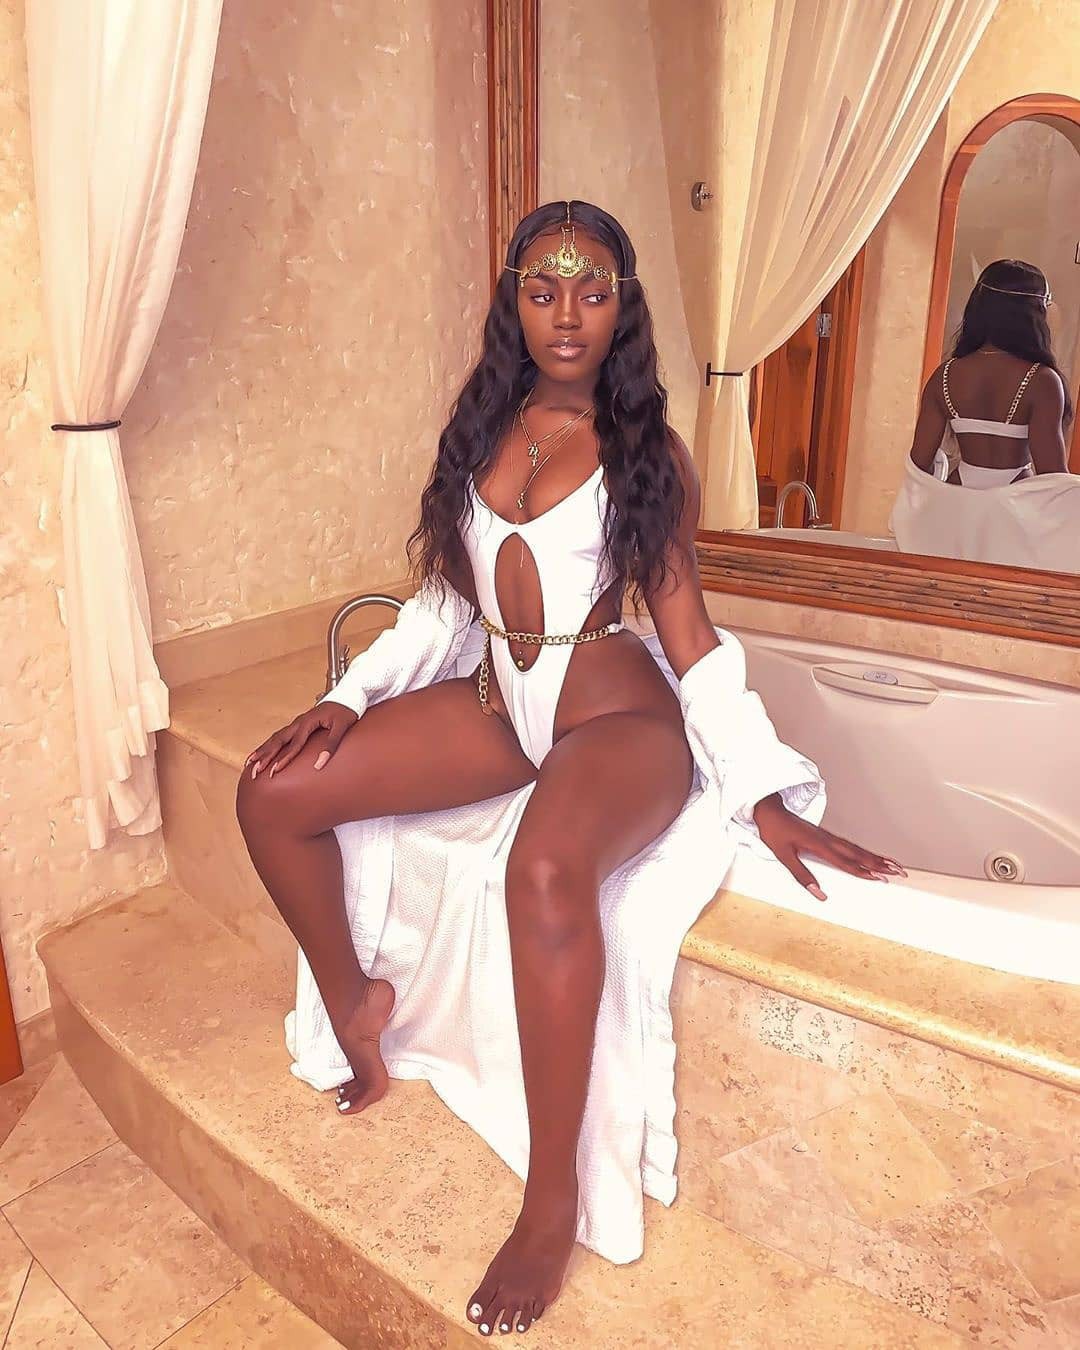 Sexy Afro Instagram Chicas Fotos: chicas negras calientes,  modelos calientes de insta,  Fotos De Chicas Negras En Bikini,  Chicas Negras Sexy Fotos,  Instapics de chicas negras,  Actriz negra caliente,  chicas negras calientes  